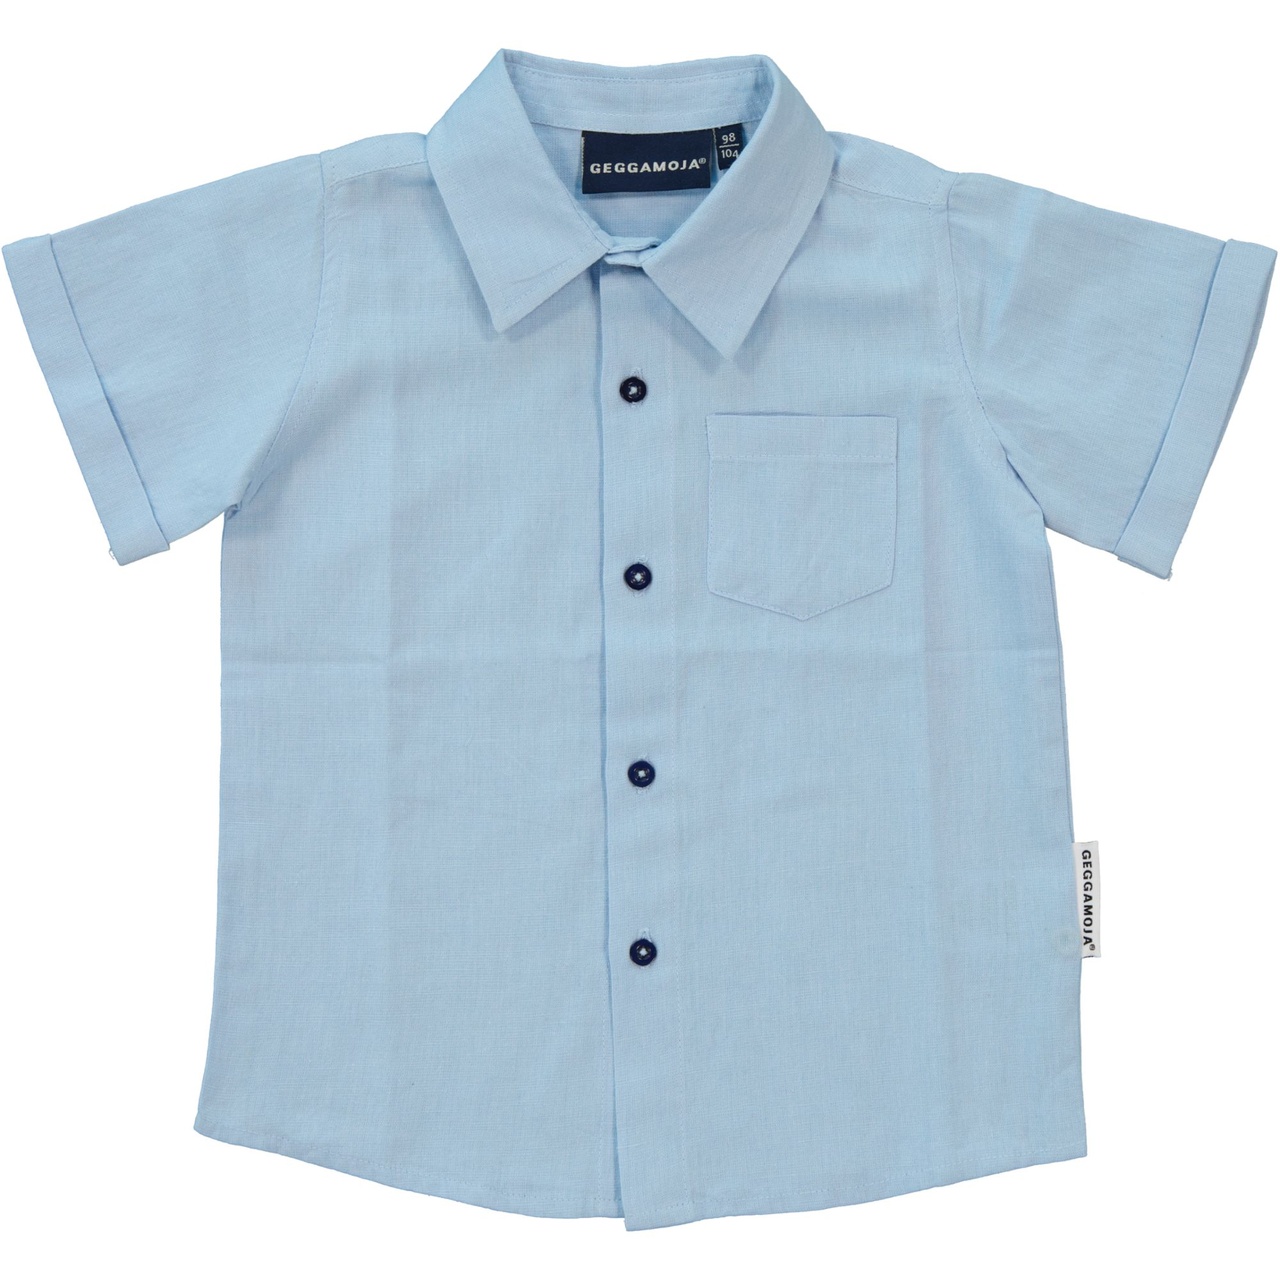 Linnen Shirt S.S Light blue